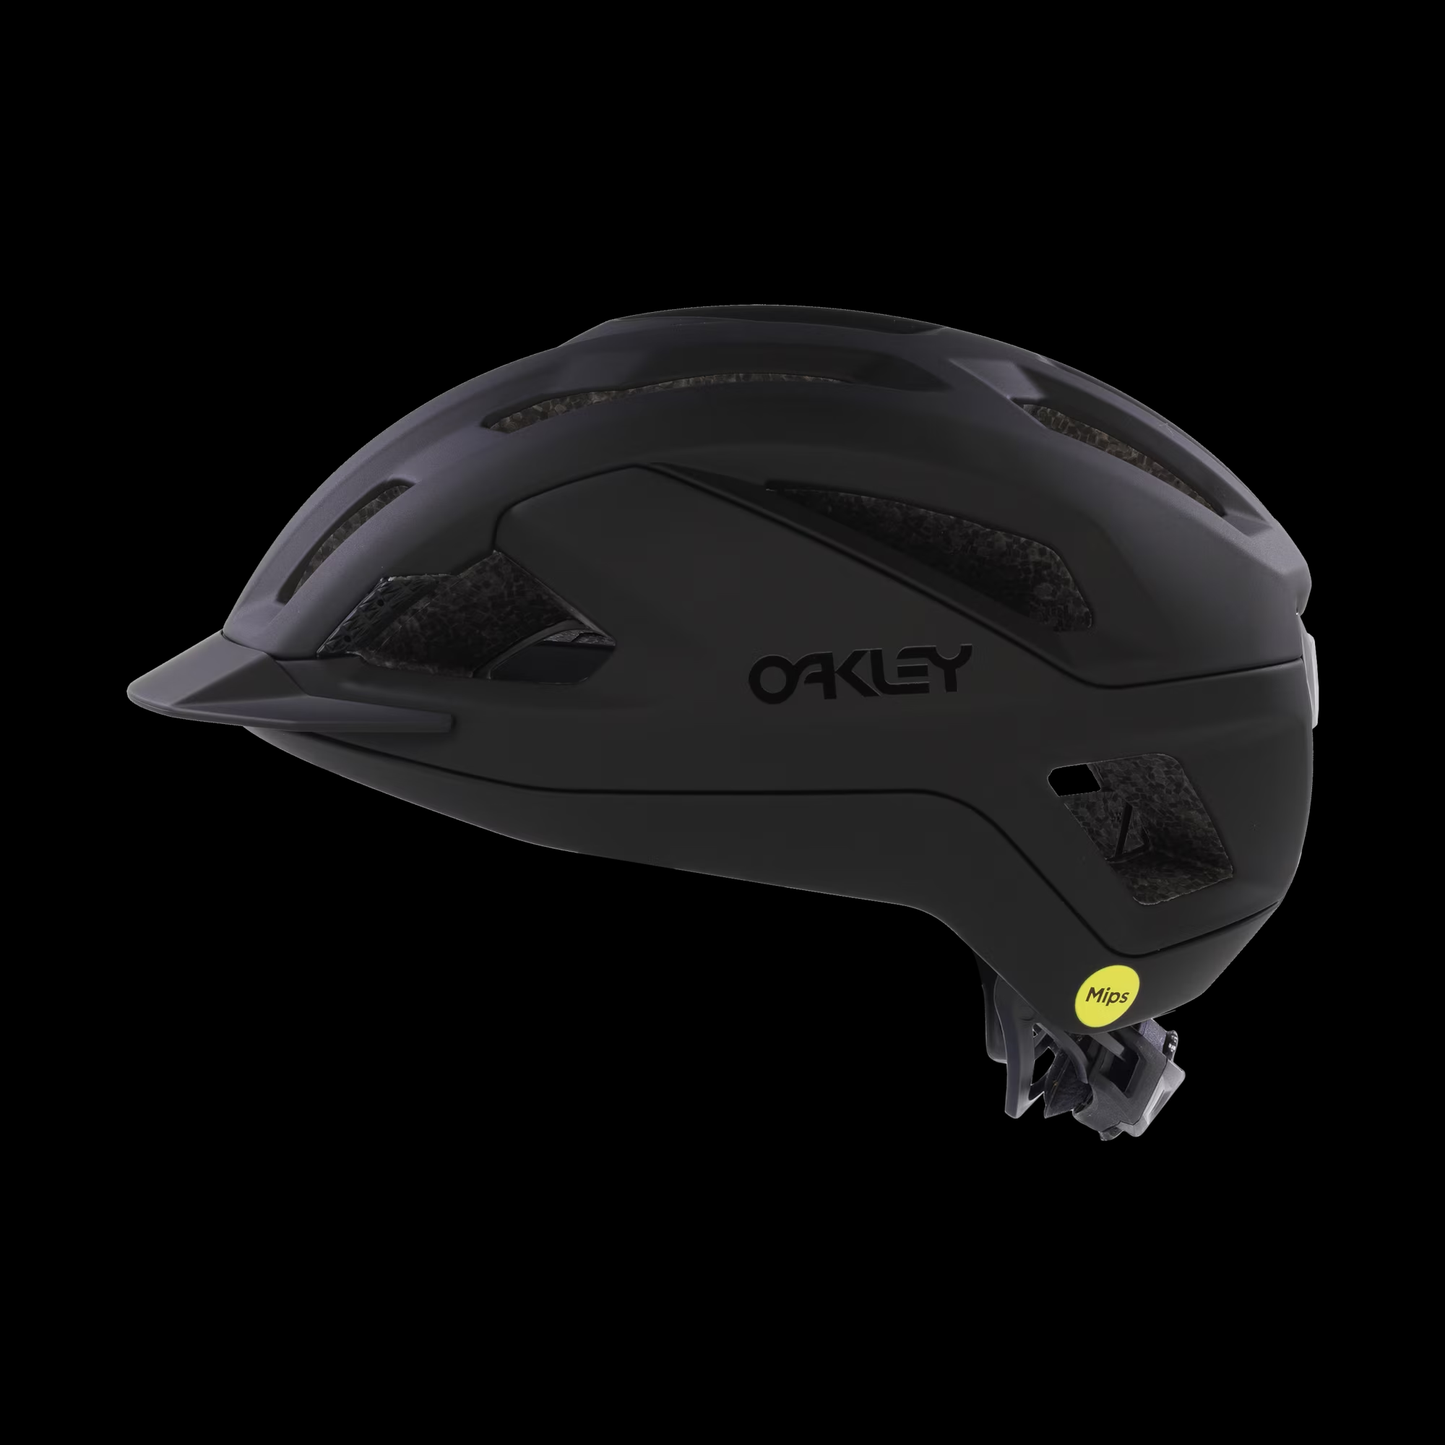 Oakley ARO3 ALLROAD Helmet